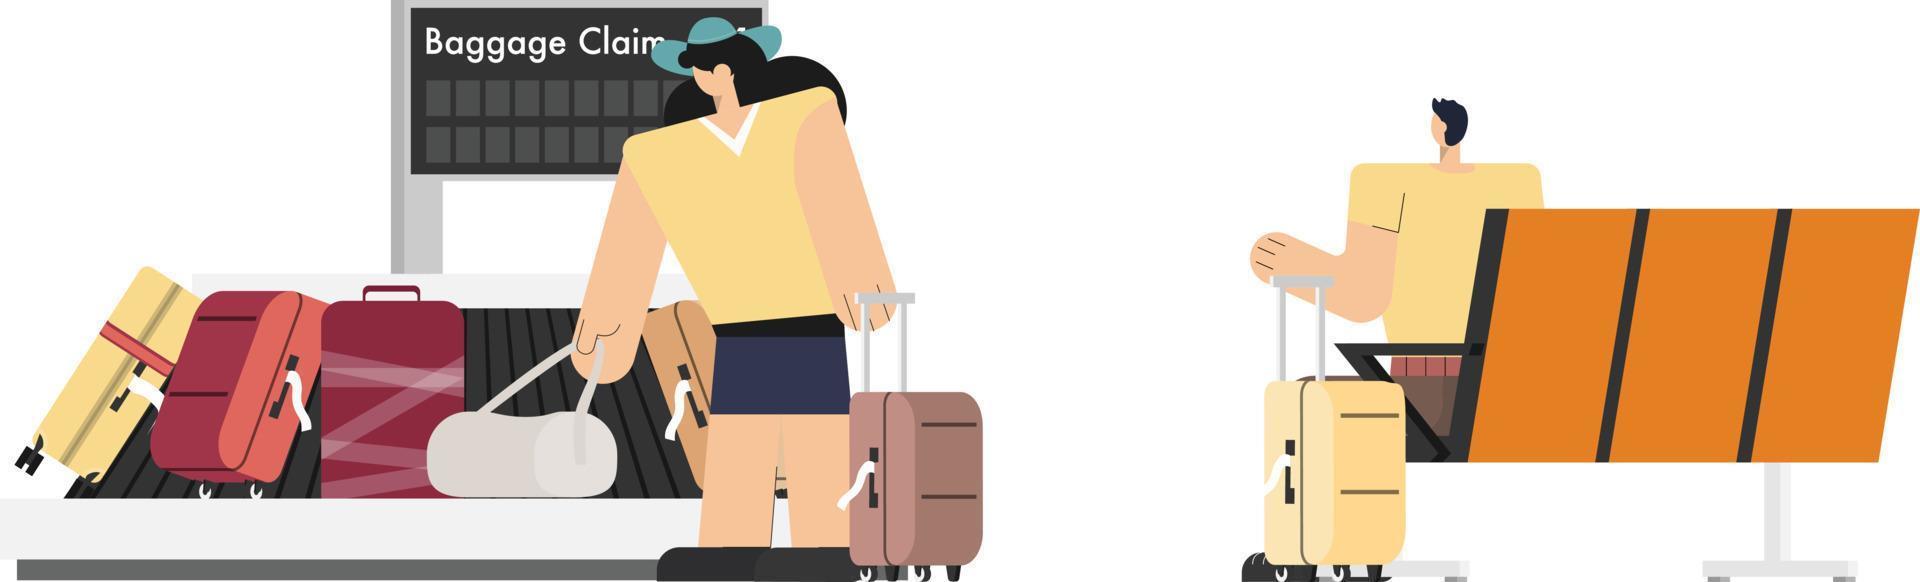 Passagiere warten und entspannen sich auf Liegestühlen und holen Gepäck vom Gepäckförderband im Flughafenterminal ab vektor